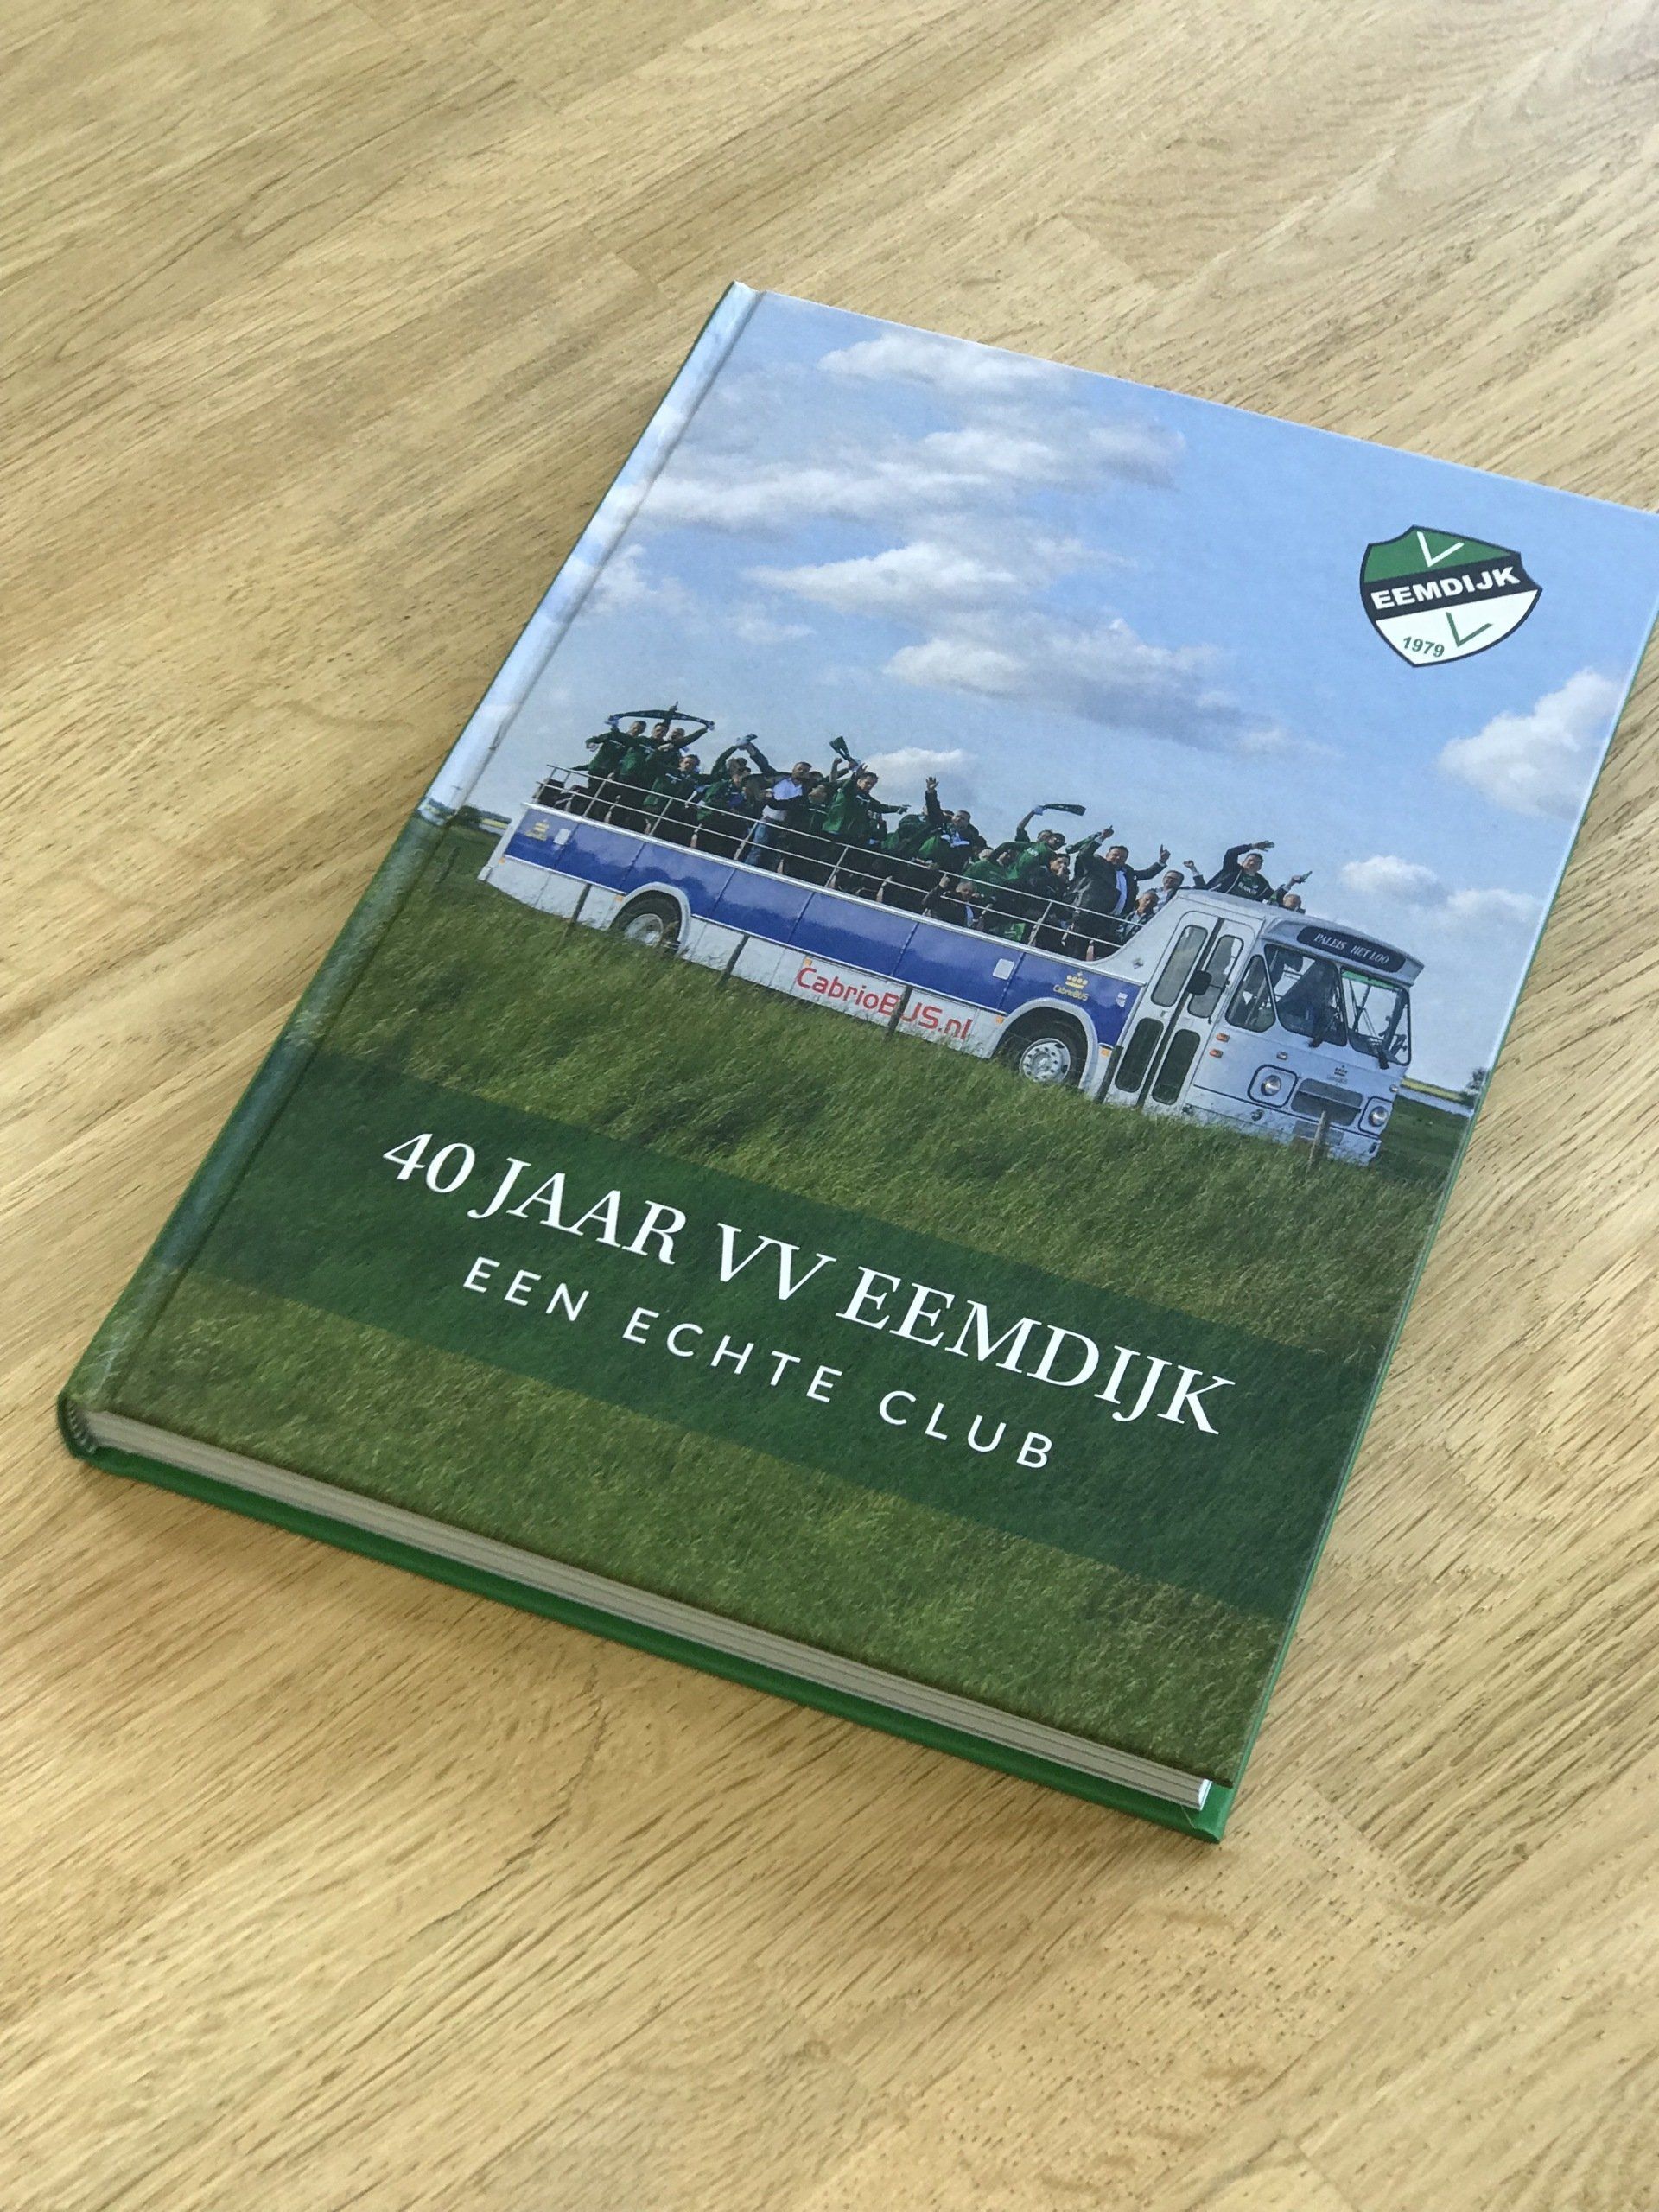 jubileum boek VV Eemdijk voetbalvereniging